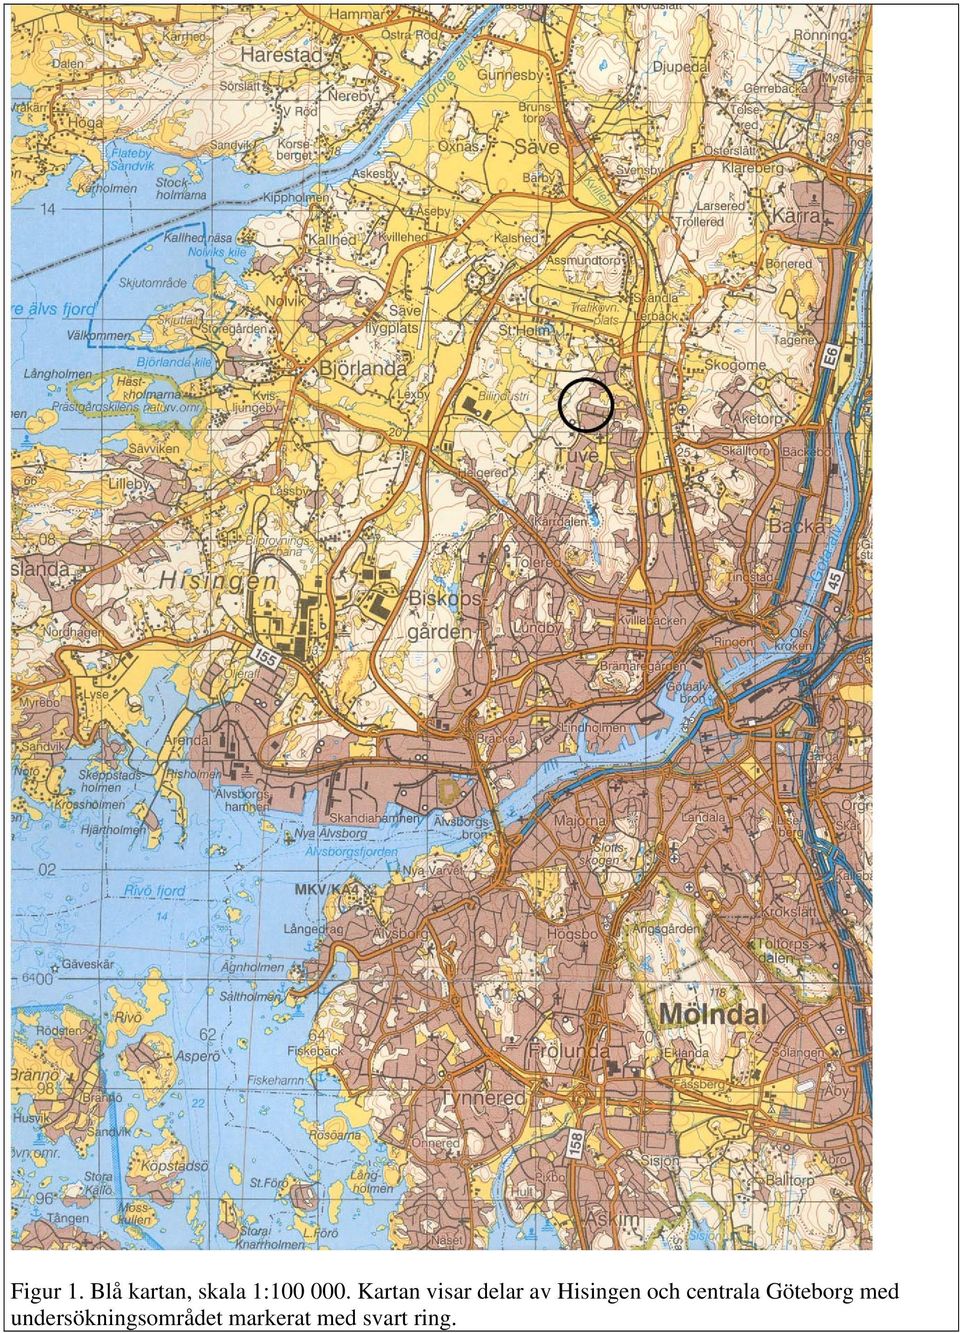 Kartan visar delar av Hisingen och